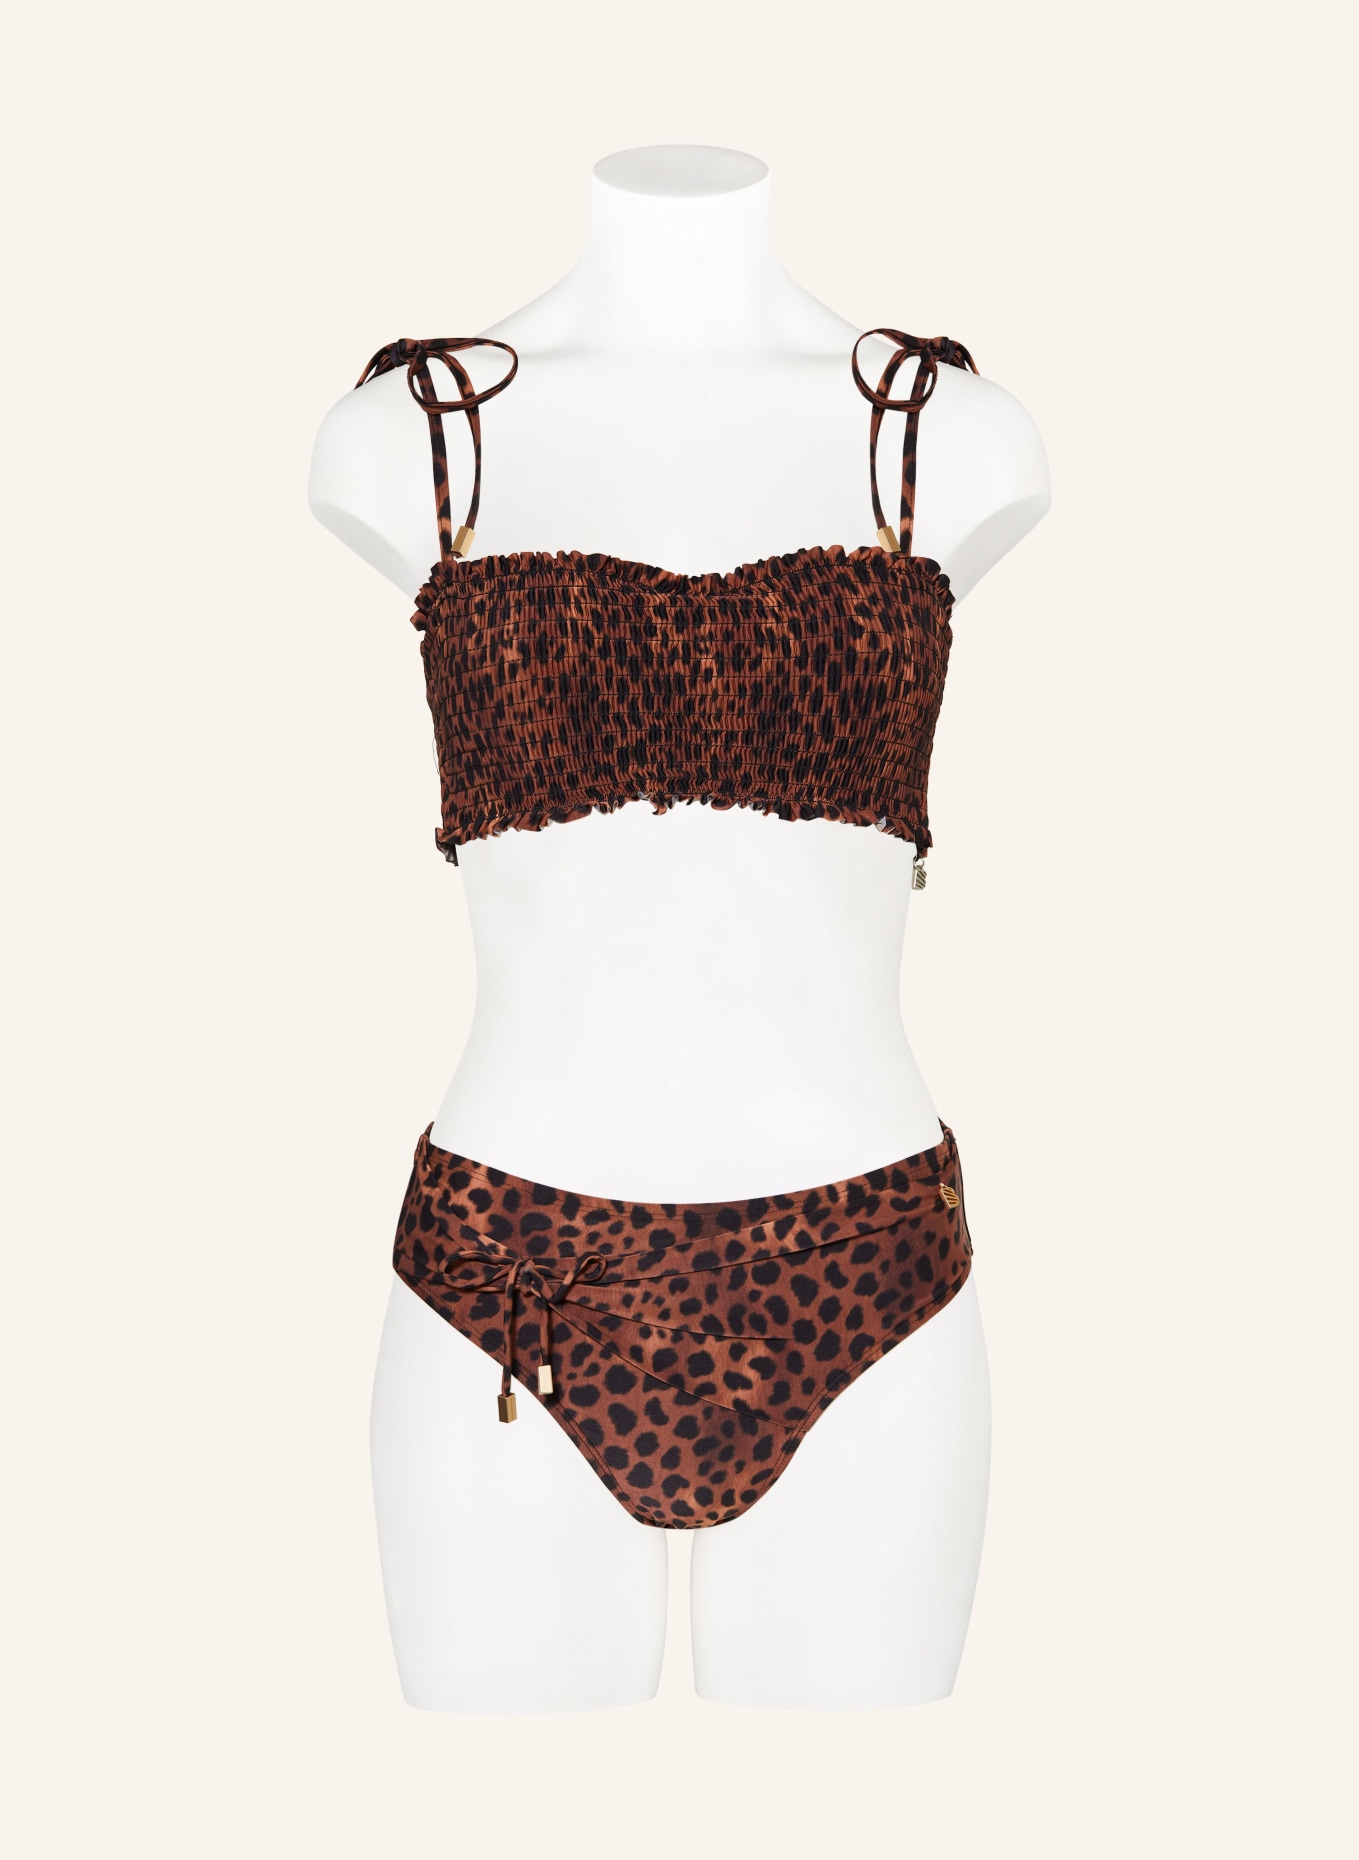 BEACHLIFE Bügel-Bikini-Top LEOPARD LOVER, Farbe: SCHWARZ/ BRAUN/ HELLBRAUN (Bild 2)